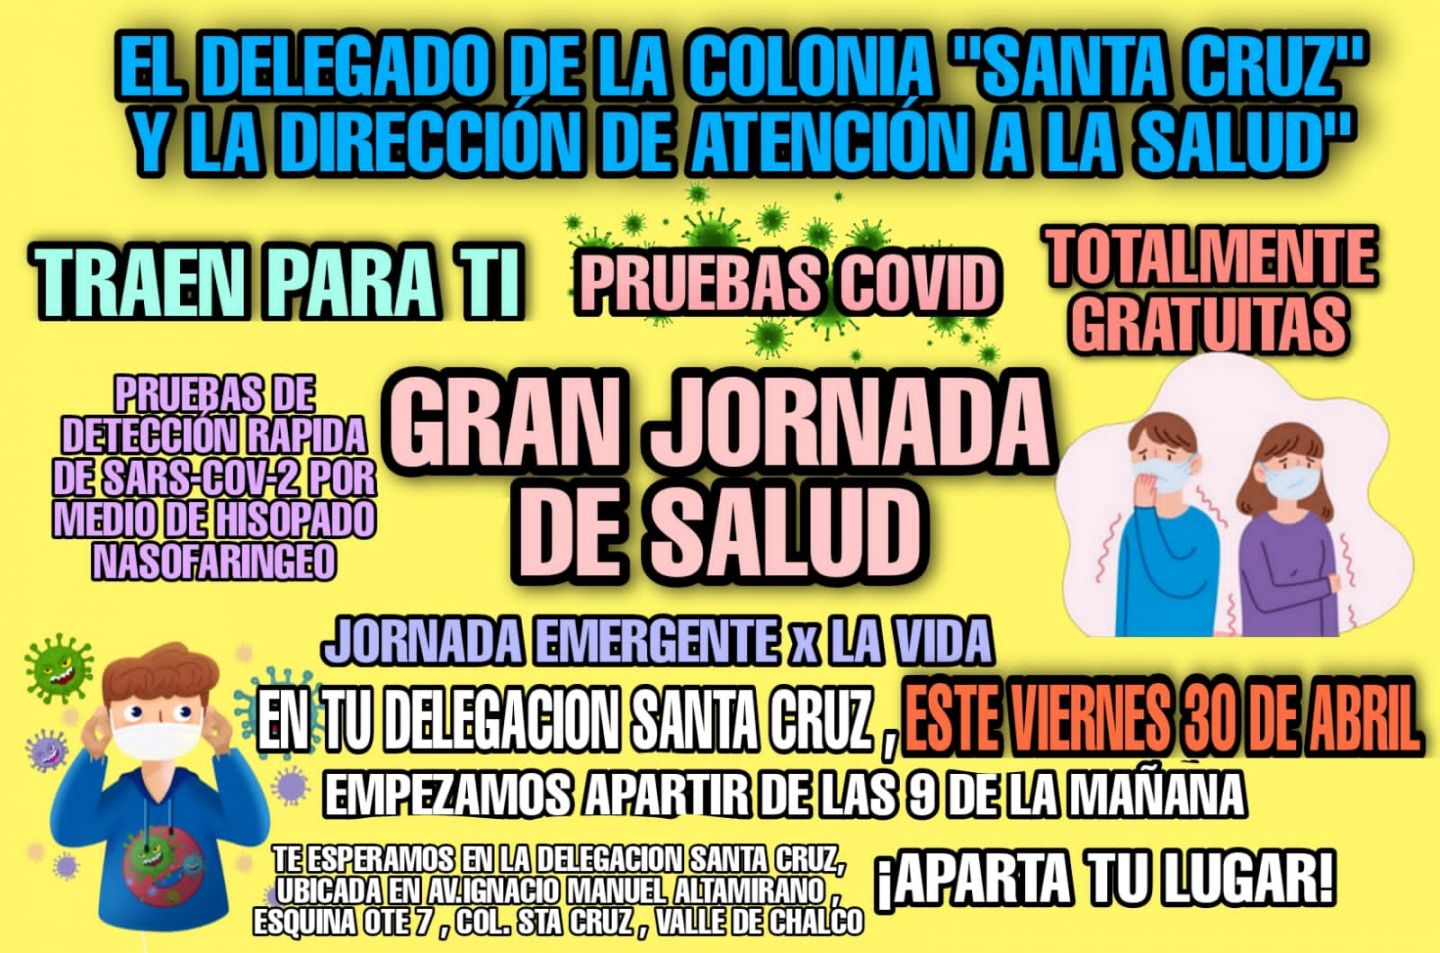 Alberto Tapia Cuamatzi Delegado de la Colonia Santa Cruz De Valle de Chalco invita a los vecinos a realizarse pruebas Covid